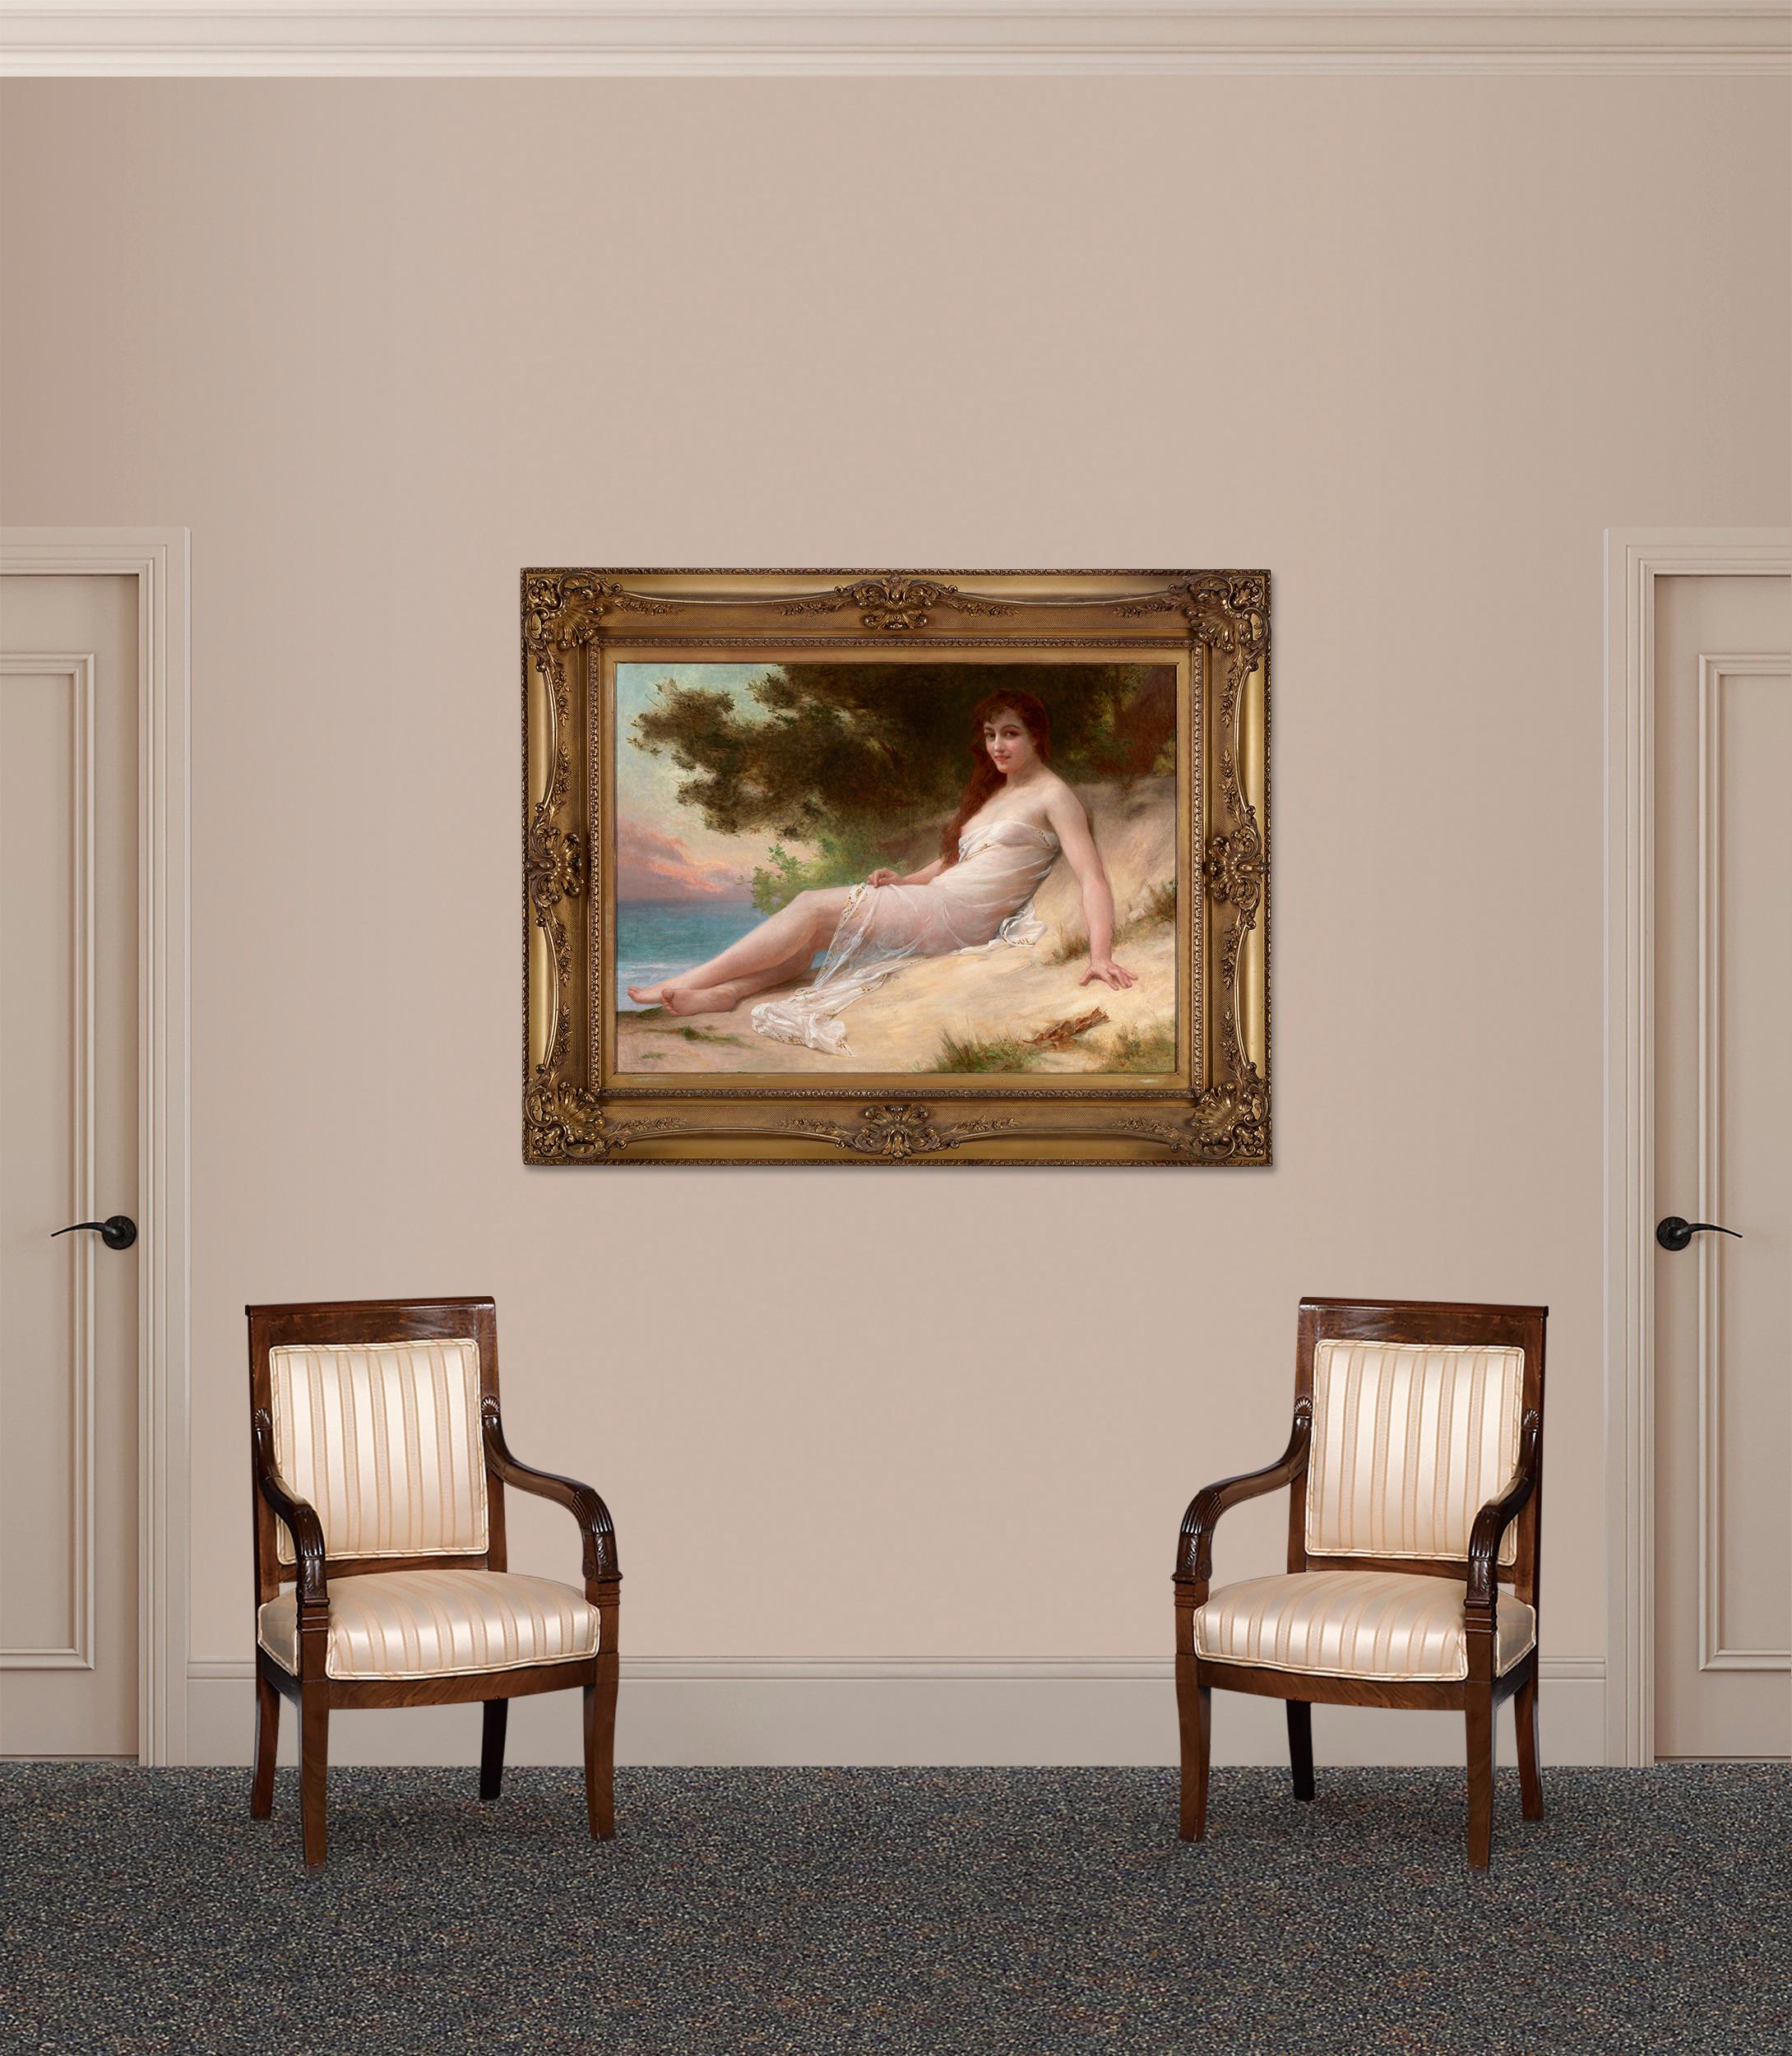 Le peintre académique français Guillaume Seignac était réputé pour son traitement magistral du nu idéalisé. Ses sujets féminins languissants, basés sur des prototypes gréco-romains, étaient et restent l'un des favoris de l'œuvre de l'artiste. La